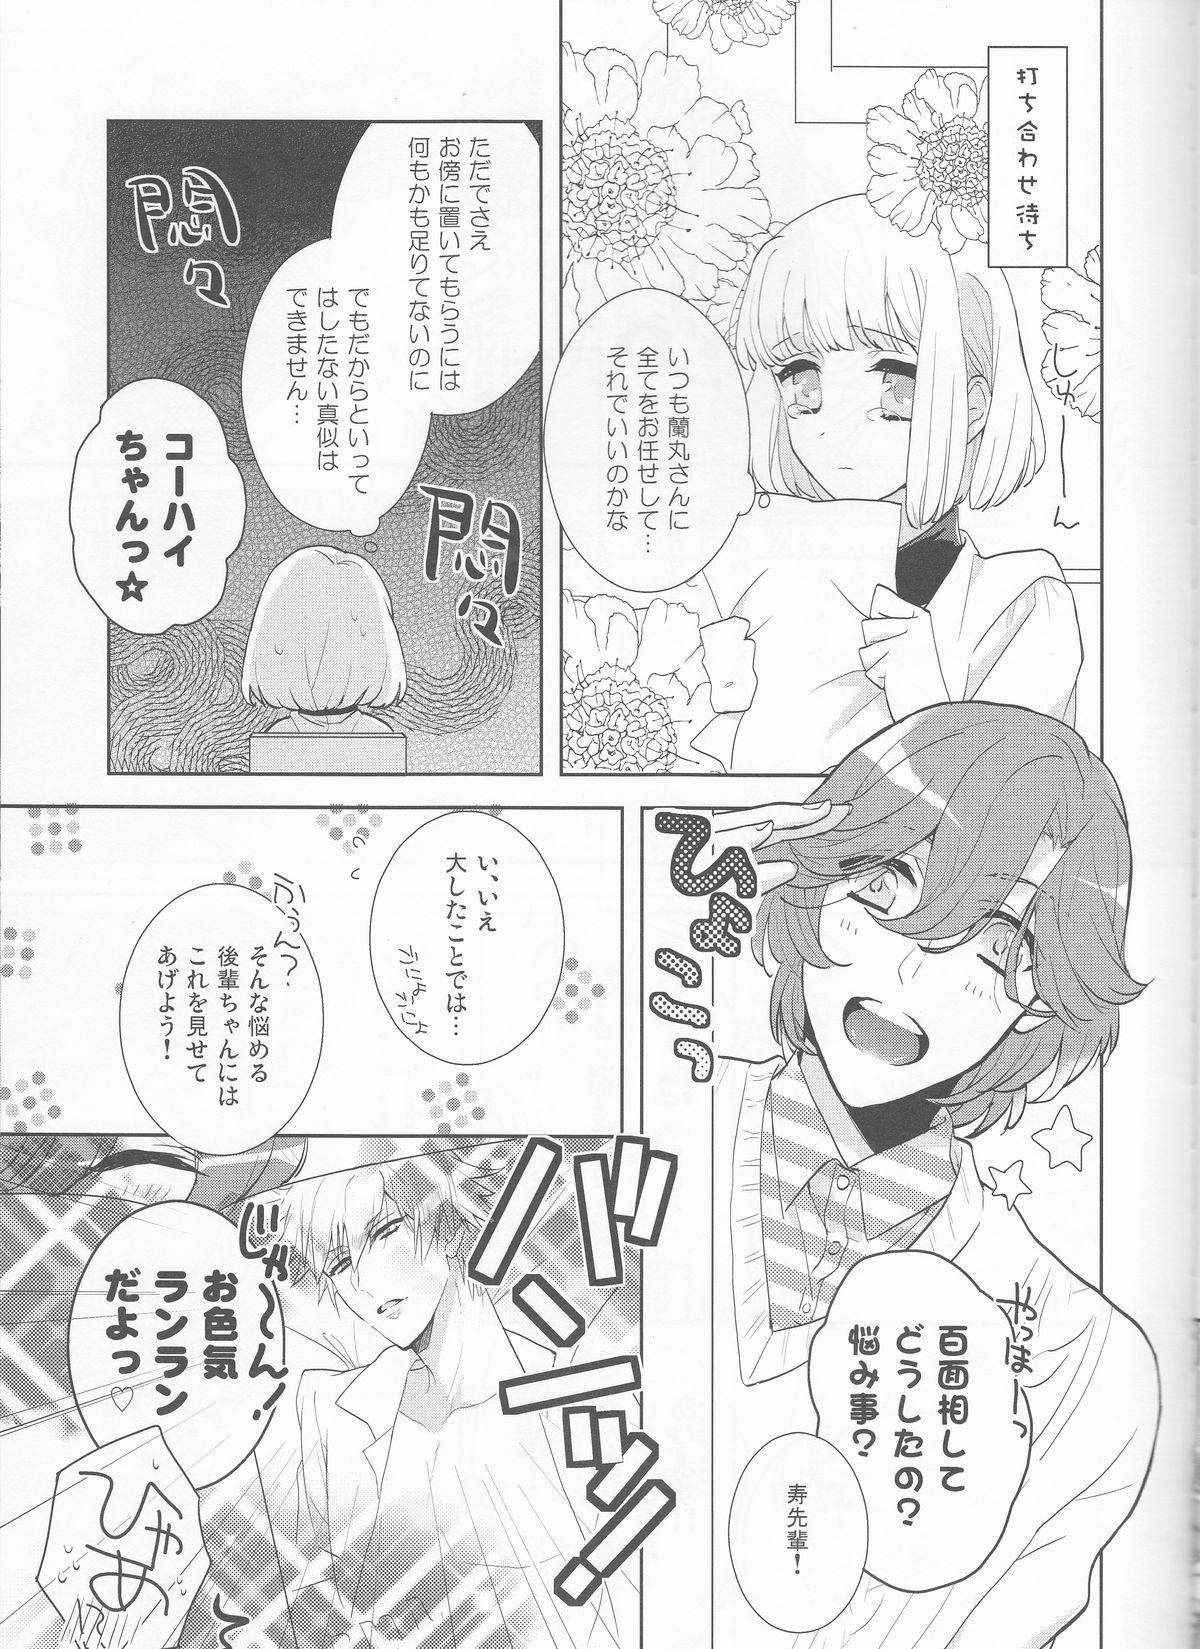 Pauzudo Otona no Hajimari - Uta no prince-sama New - Page 6